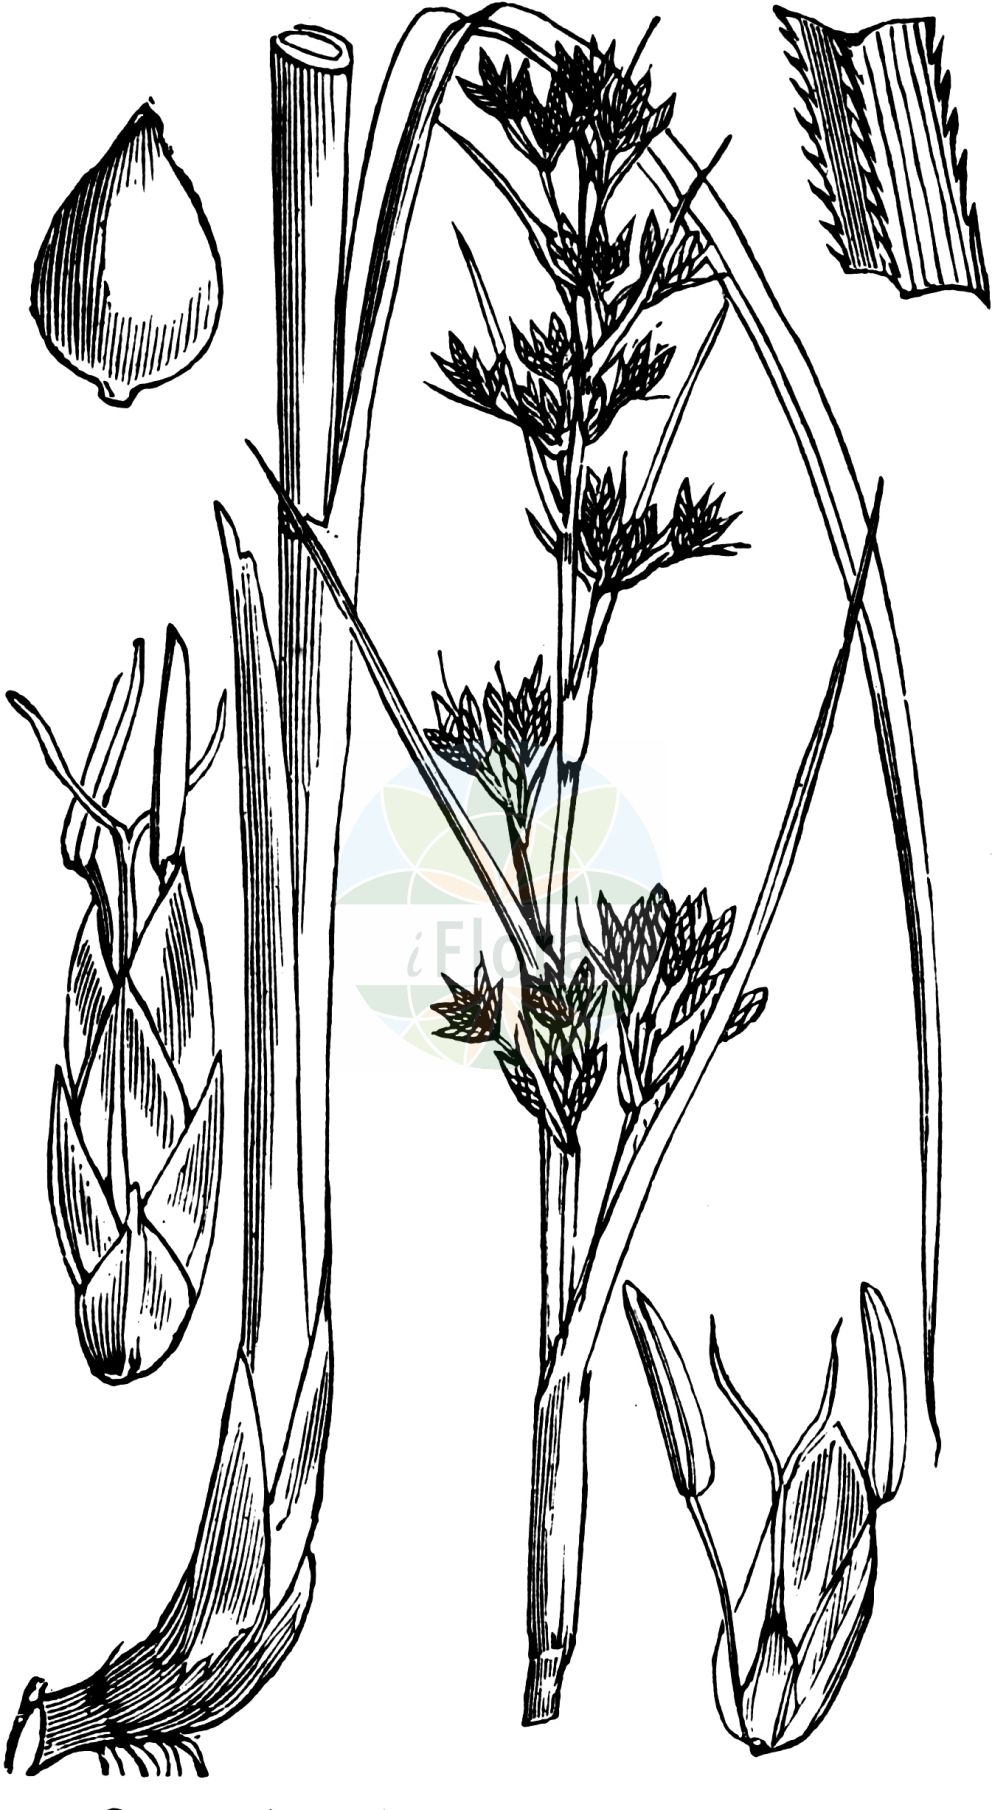 Historische Abbildung von Cladium mariscus (Binsenschneide - Great Fen-Sedge). Das Bild zeigt Blatt, Bluete, Frucht und Same. ---- Historical Drawing of Cladium mariscus (Binsenschneide - Great Fen-Sedge). The image is showing leaf, flower, fruit and seed.(Cladium mariscus,Binsenschneide,Great Fen-Sedge,Cladium grossheimii,Cladium mariscus,Isolepis martii,Schoenus mariscus,Binsenschneide,Binsen-Schneide,Great Fen-Sedge,Cut-Sedge,Swamp Sawgrass,Galigaan,Smooth Sawgrass,Twig Rush,Cladium,Schneide,Cut-Sedge,Cyperaceae,Sauergräser,Sedge family,Blatt,Bluete,Frucht,Same,leaf,flower,fruit,seed,Fitch et al. (1880))